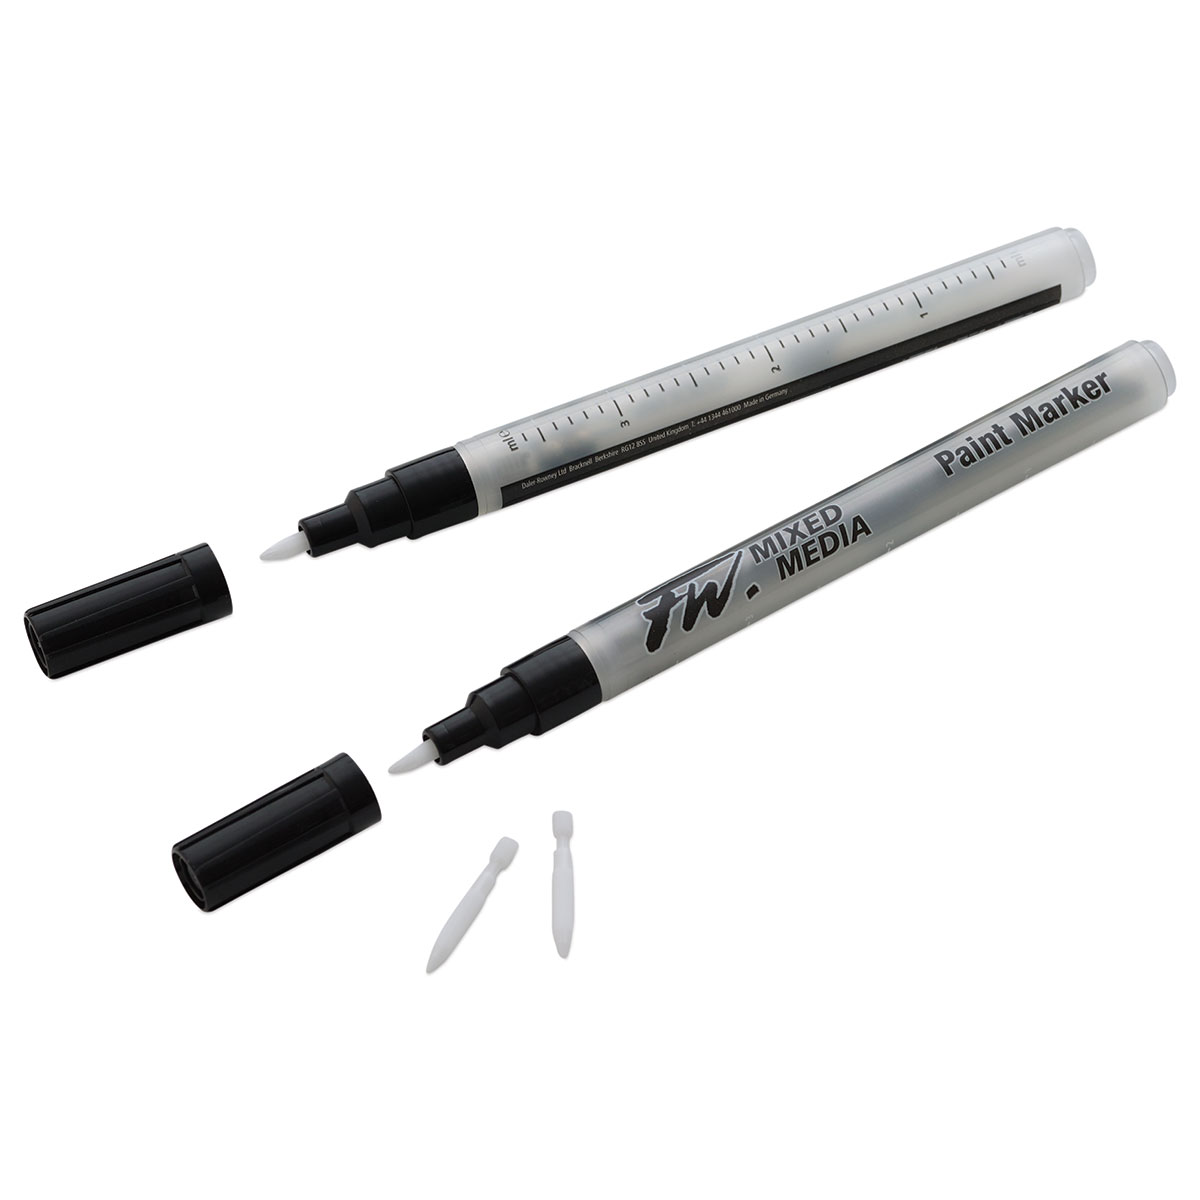 Daler Rowney Simply Black Fineliner Pen Set of 6 